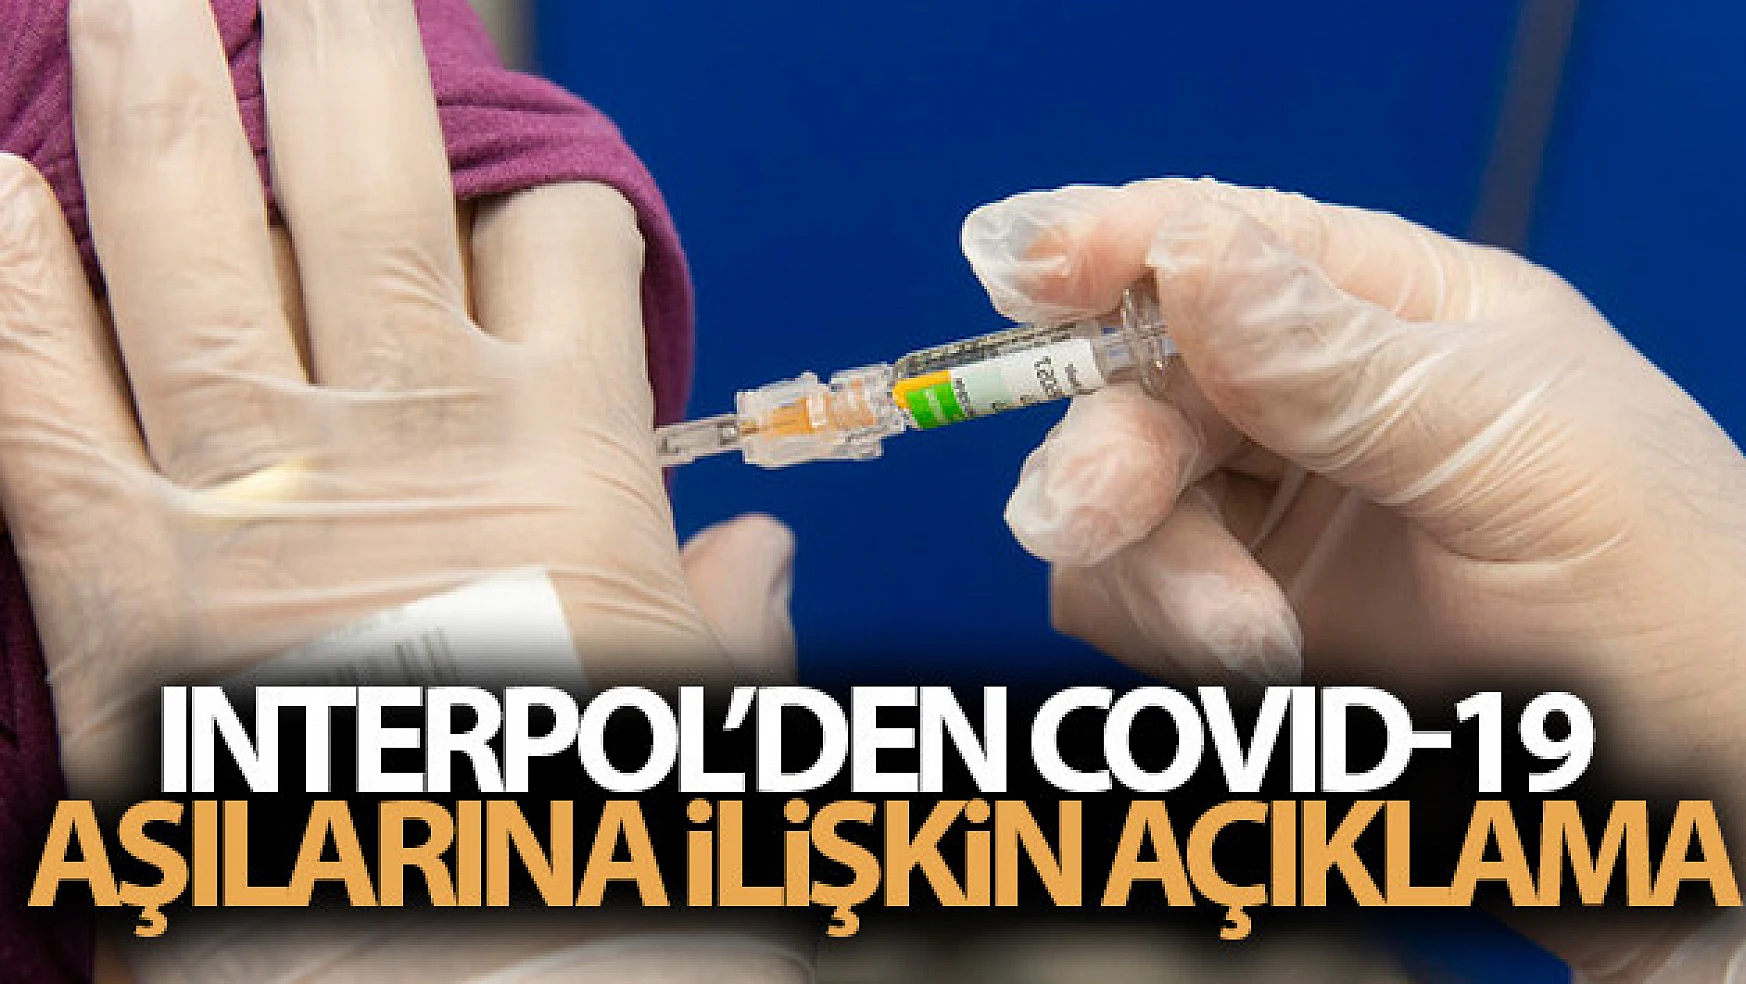 Interpol'den Covid-19 aşılarına ilişkin açıklama